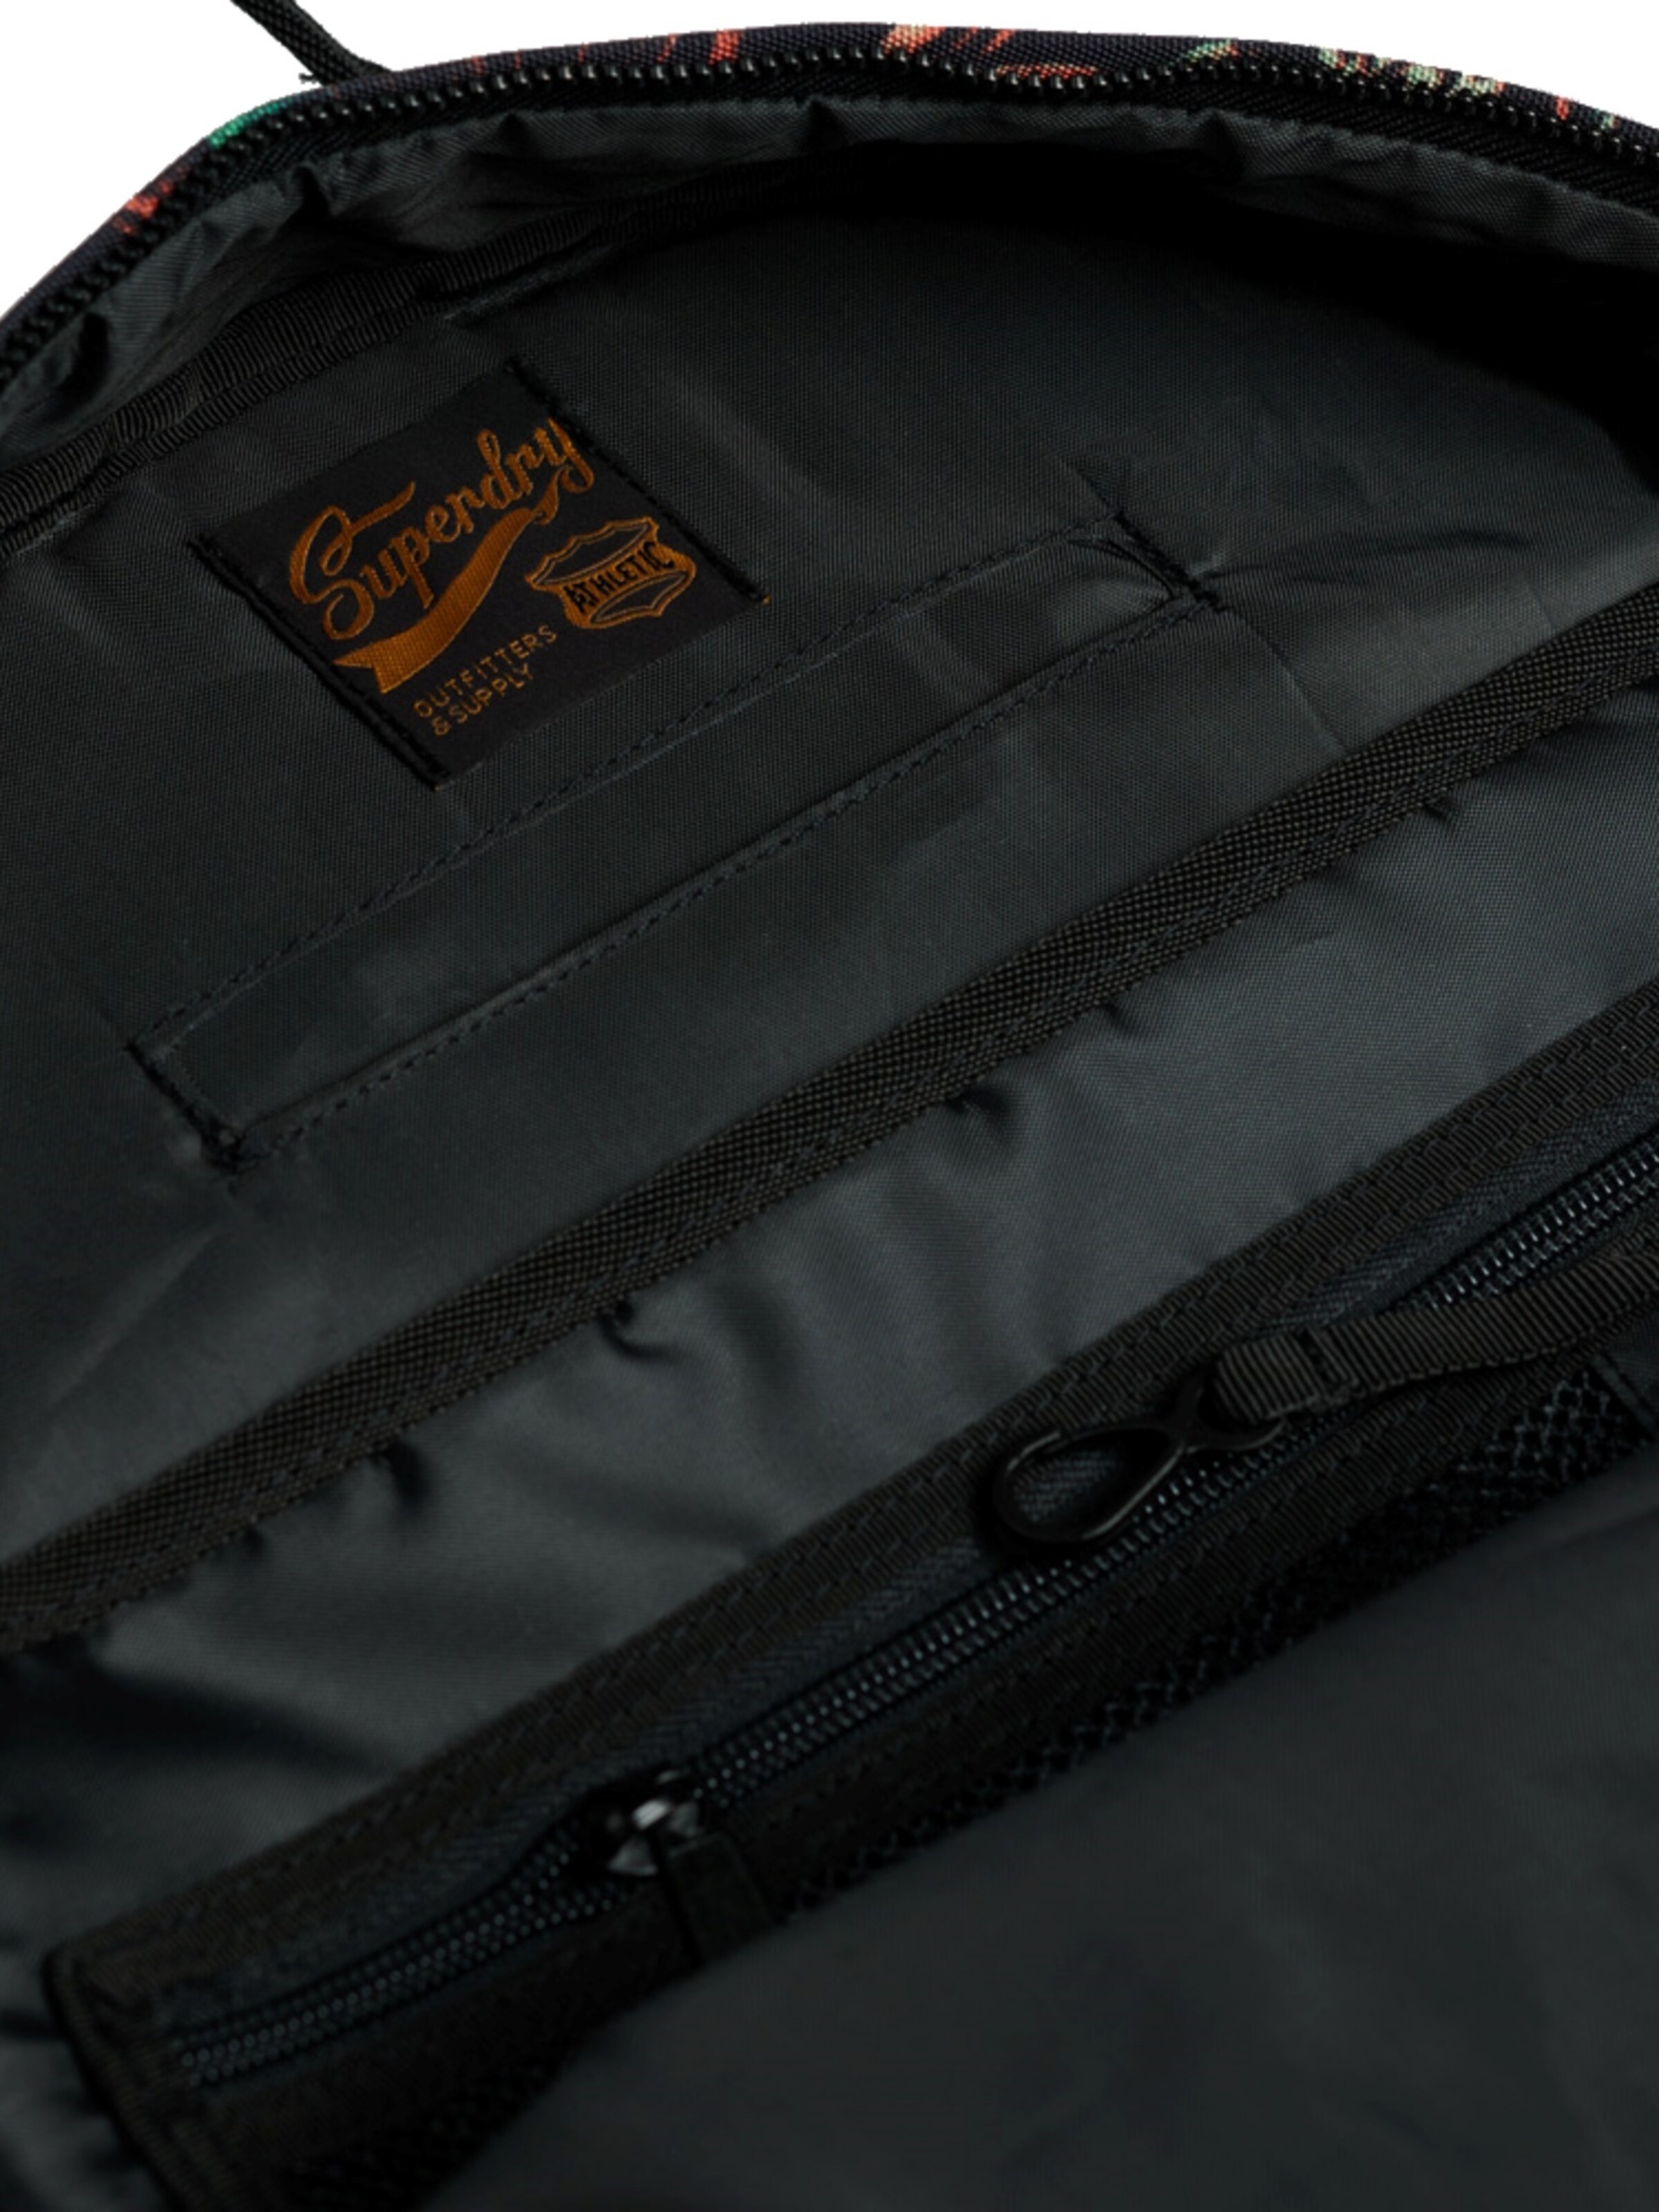 Superdry backpack - Superdry vintage forest - Superdry vintage forest  backpack - Superdry school backpack